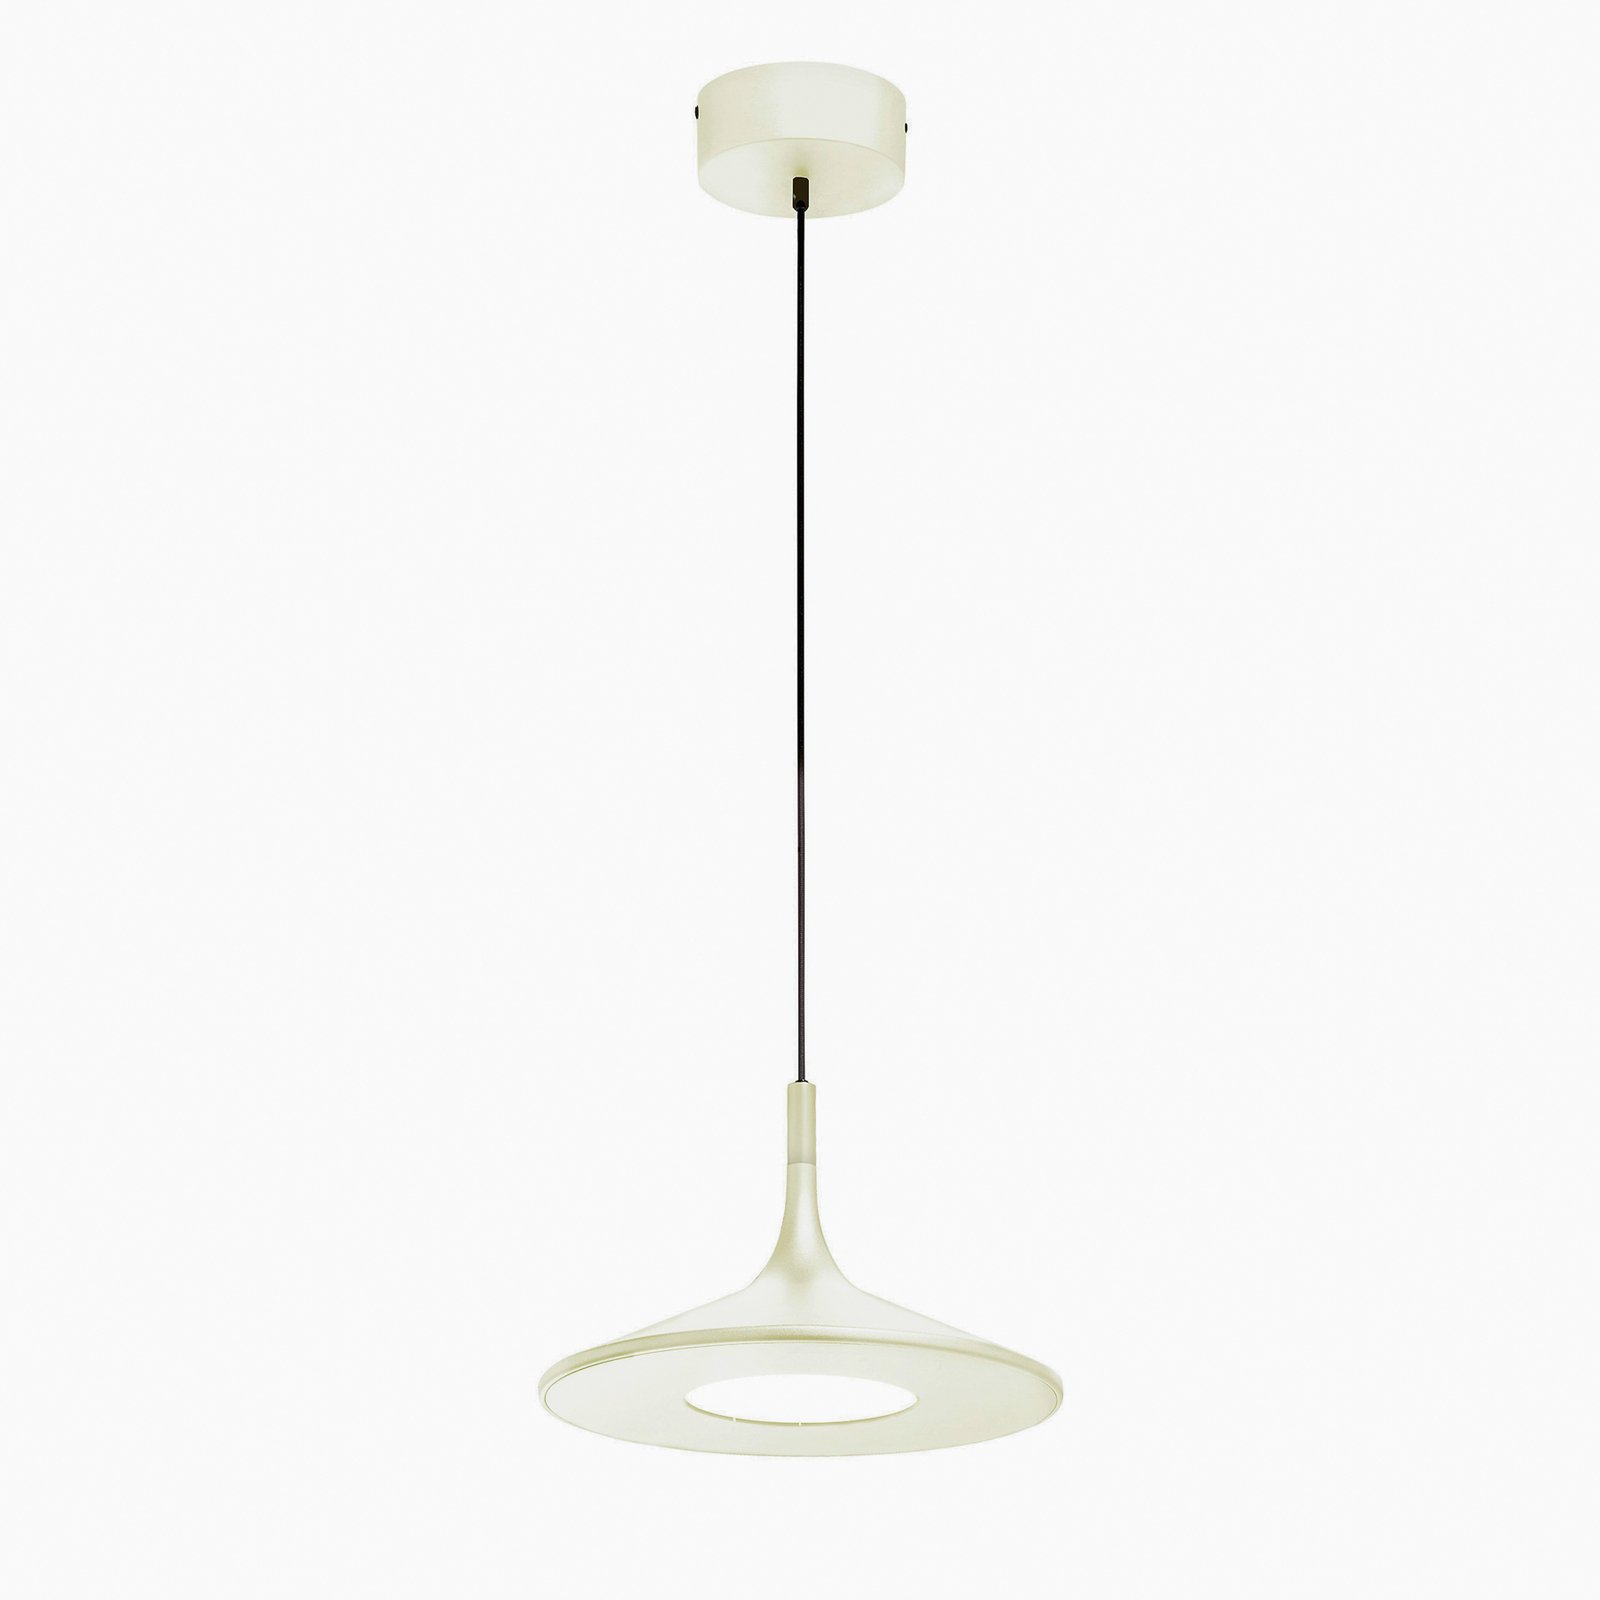 Lampa wisząca LED Slim firmy Schöner Wohnen, biała